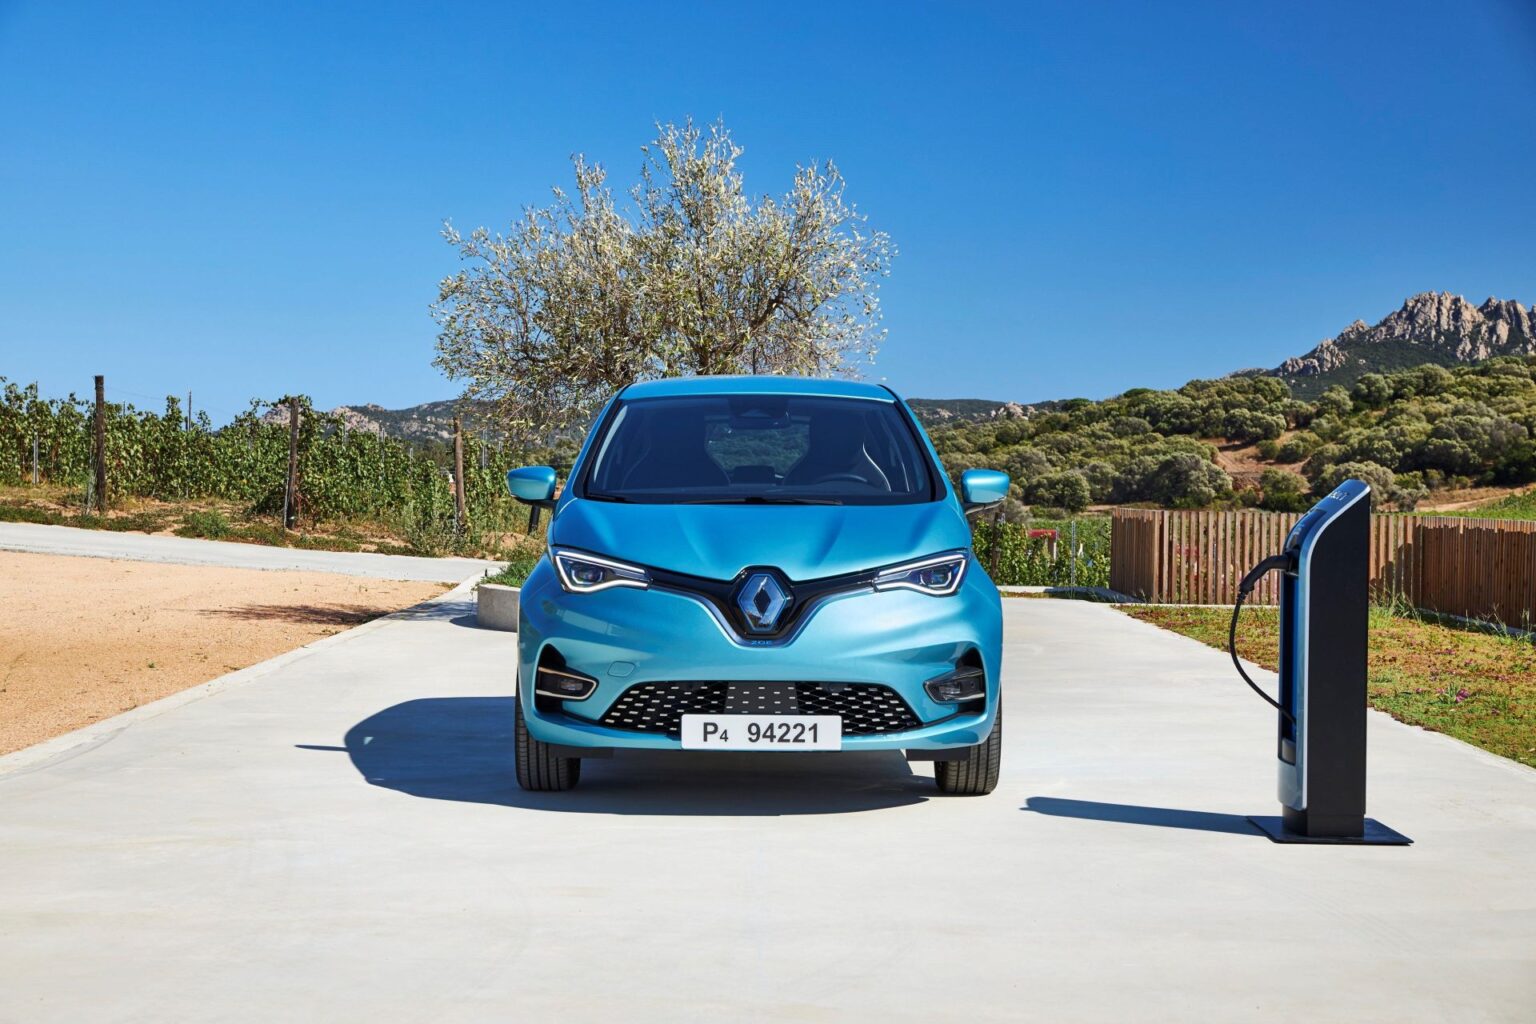 Der 6.000-Euro-Elektrobonus von Renault setzt sich zusammen aus dem aktuell gültigen Umweltbonus des Bundesamts für Wirtschaft und Ausfuhrkontrolle (BAFA) in Höhe von 2.000 Euro (unverändert) und der auf jetzt 4.000 Euro erhöhten Renault Förderung. Die Erhöhung der Renault Förderung gilt so lange, bis die erhöhte BAFA-Prämie in Kraft tritt.